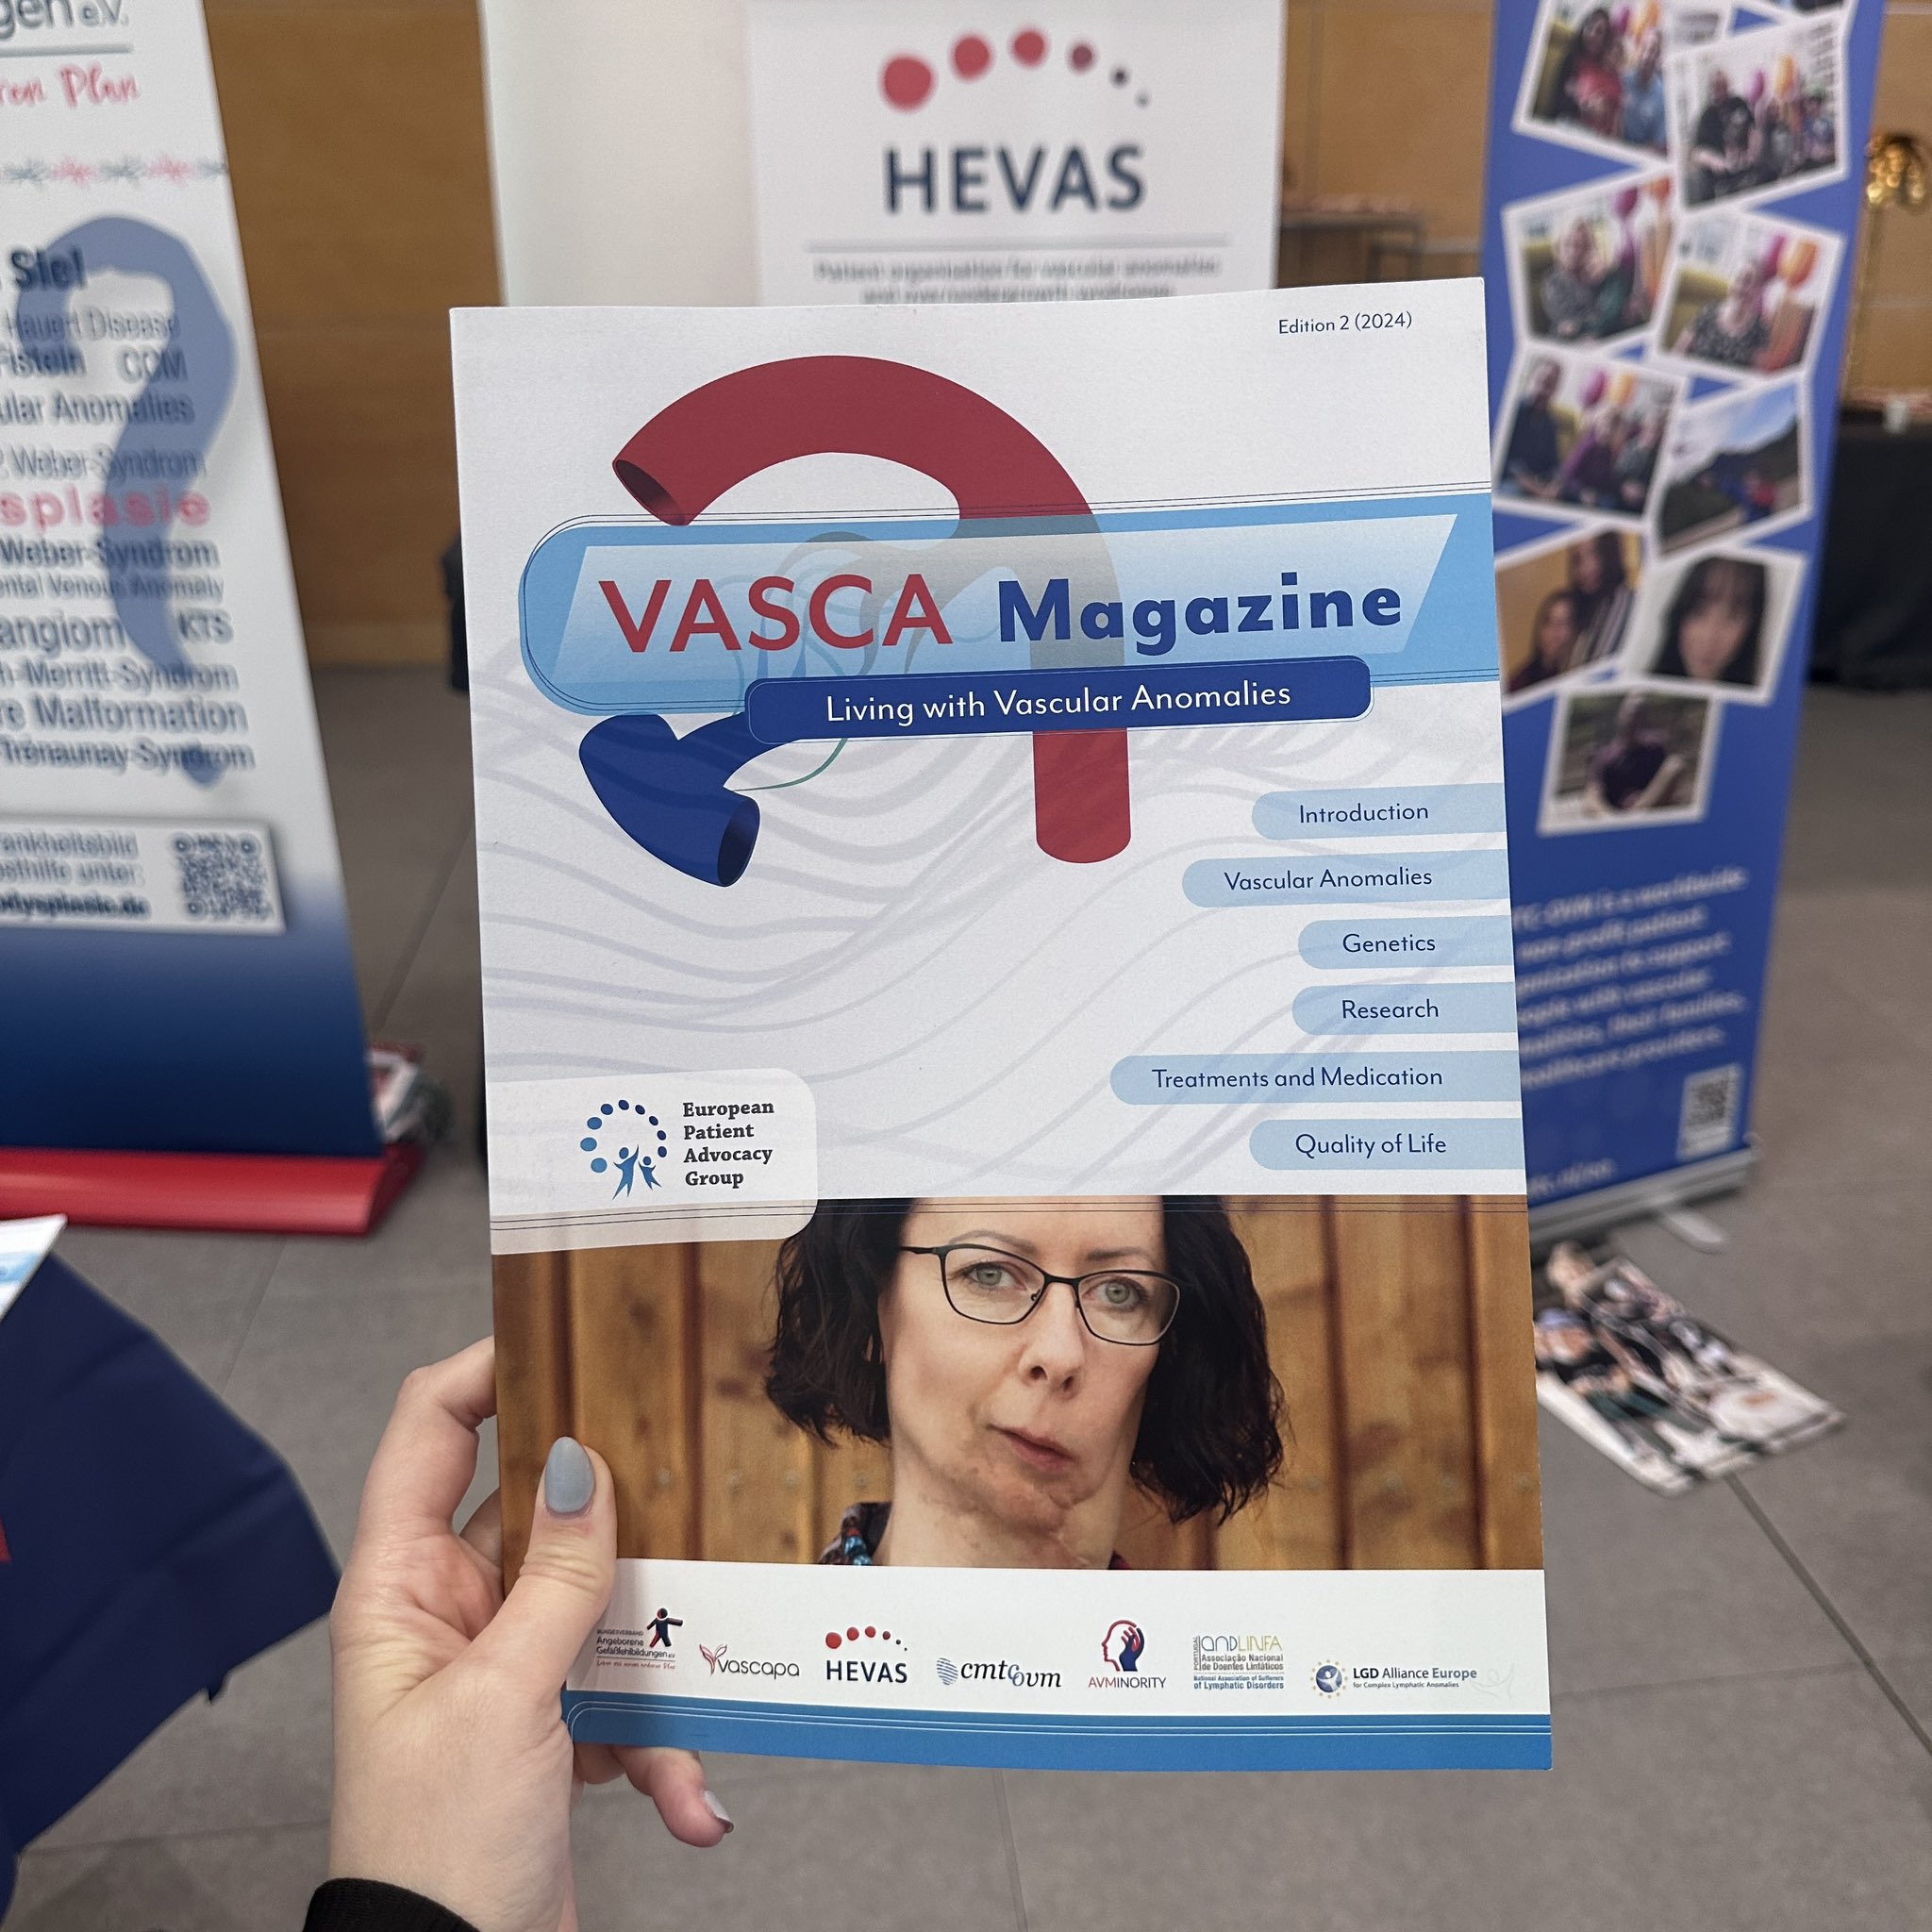 VASCA Magazine at ISSVA